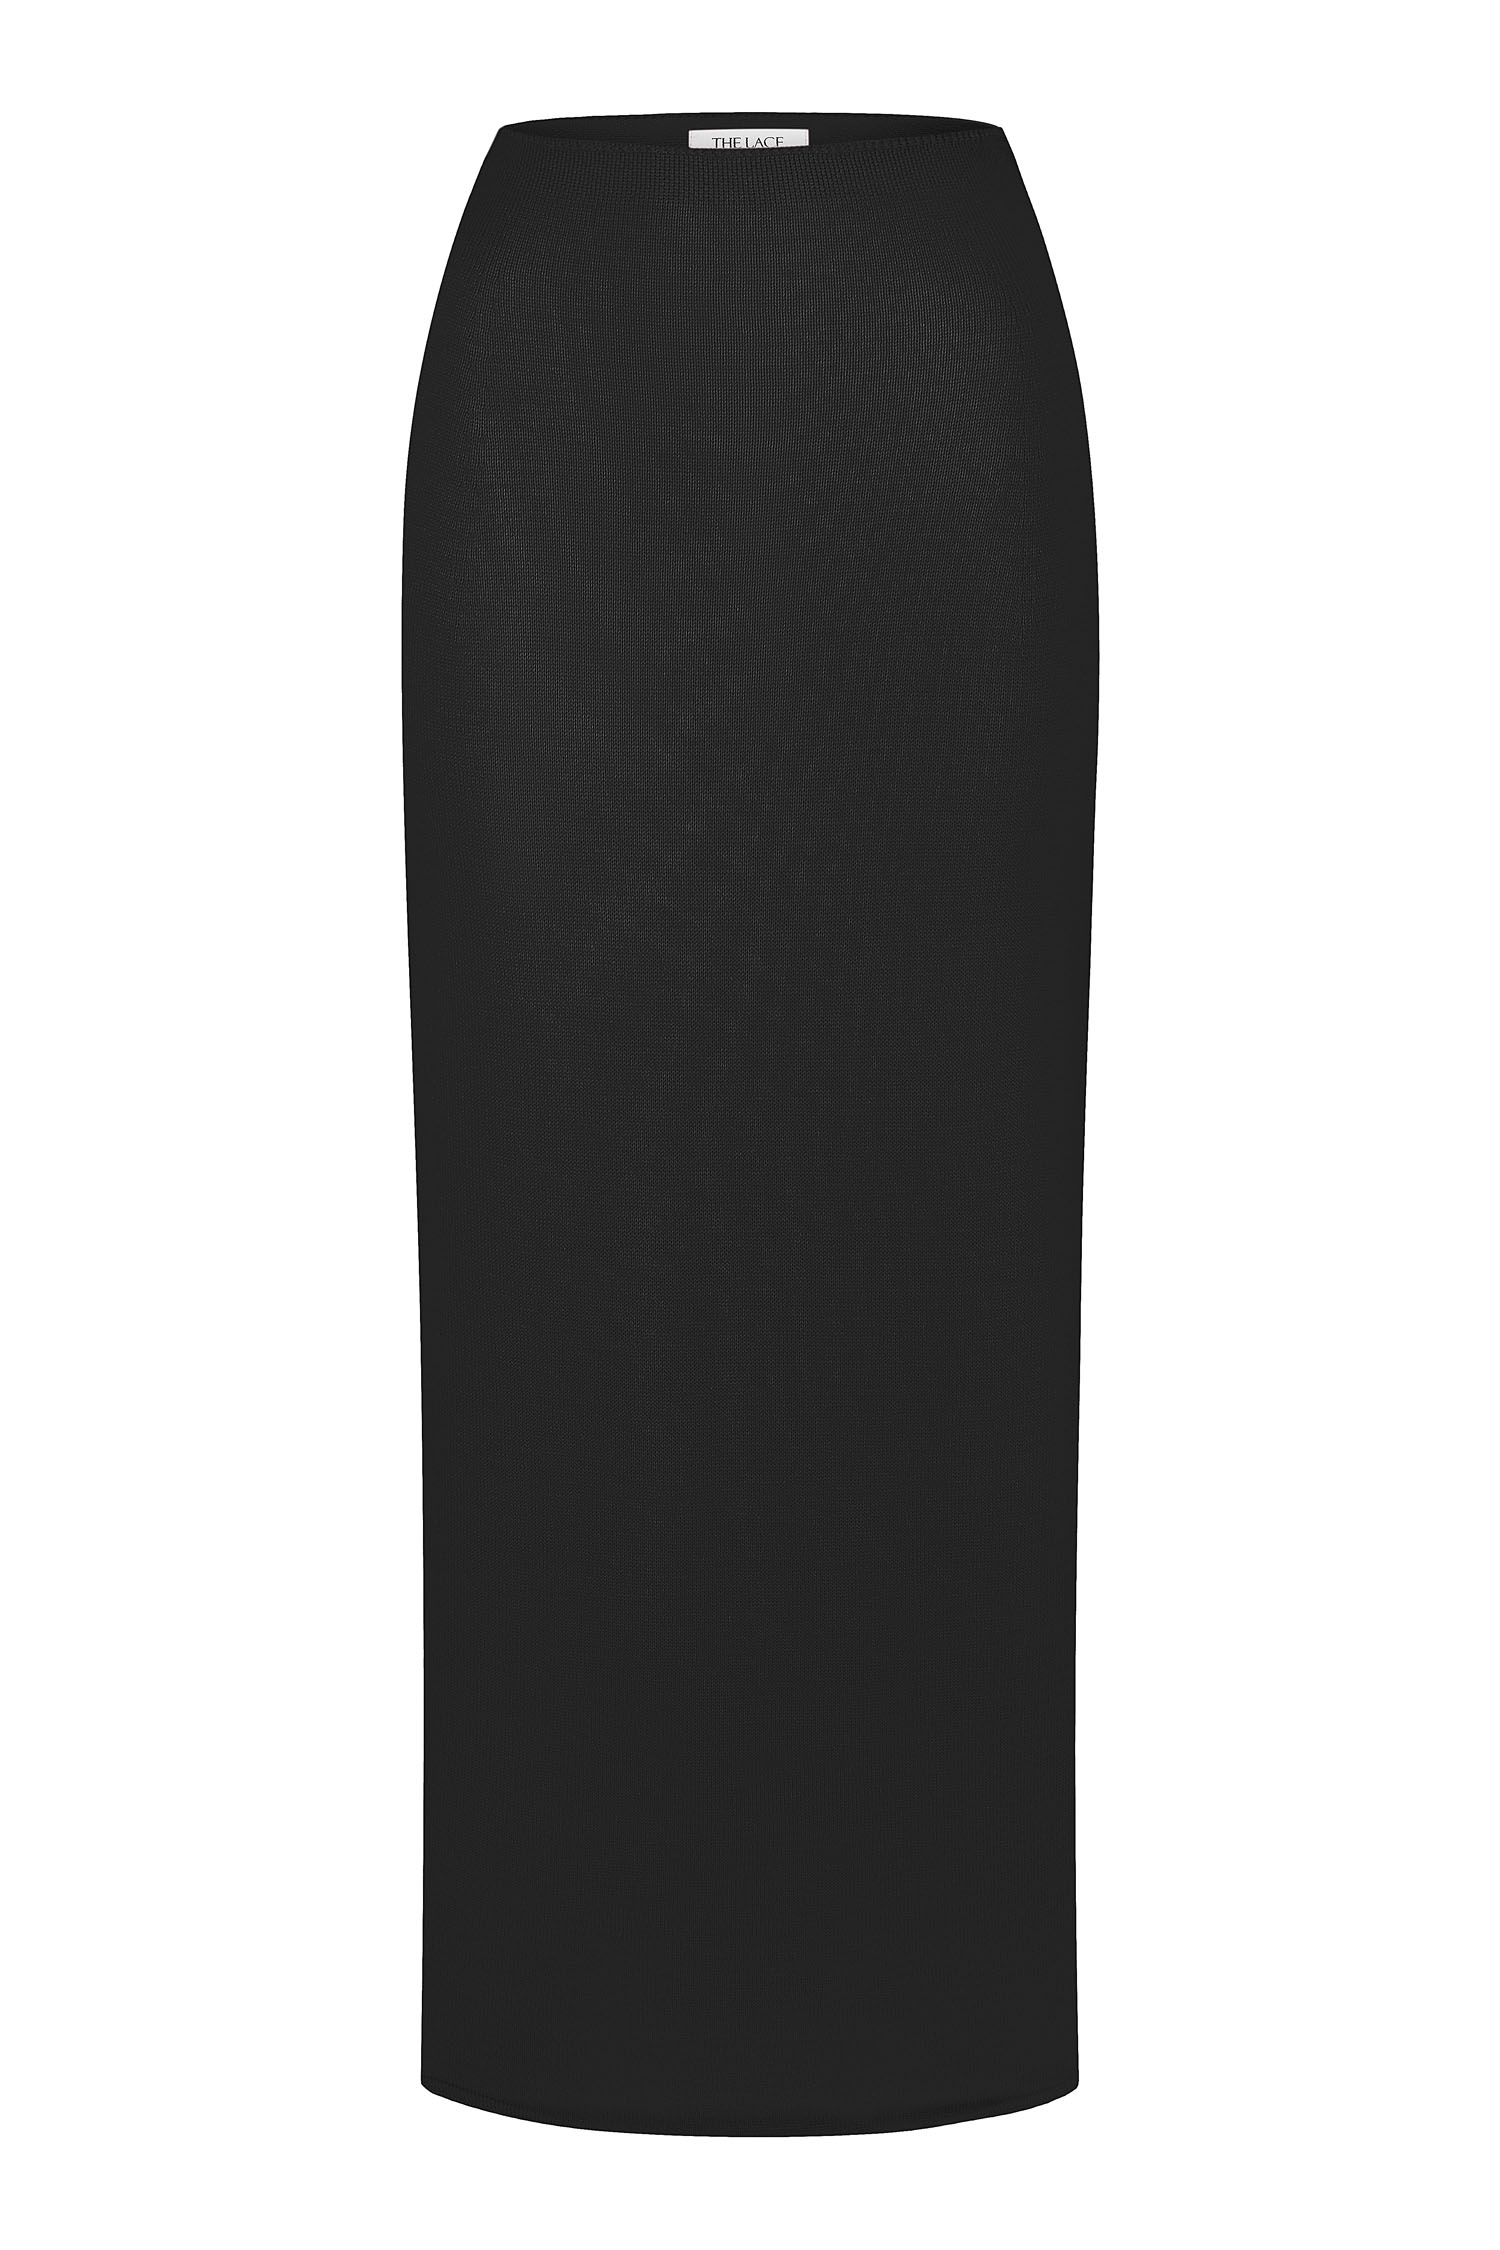 Трикотажна спідниця з низькою талією чорна - THE LACE фото 138233